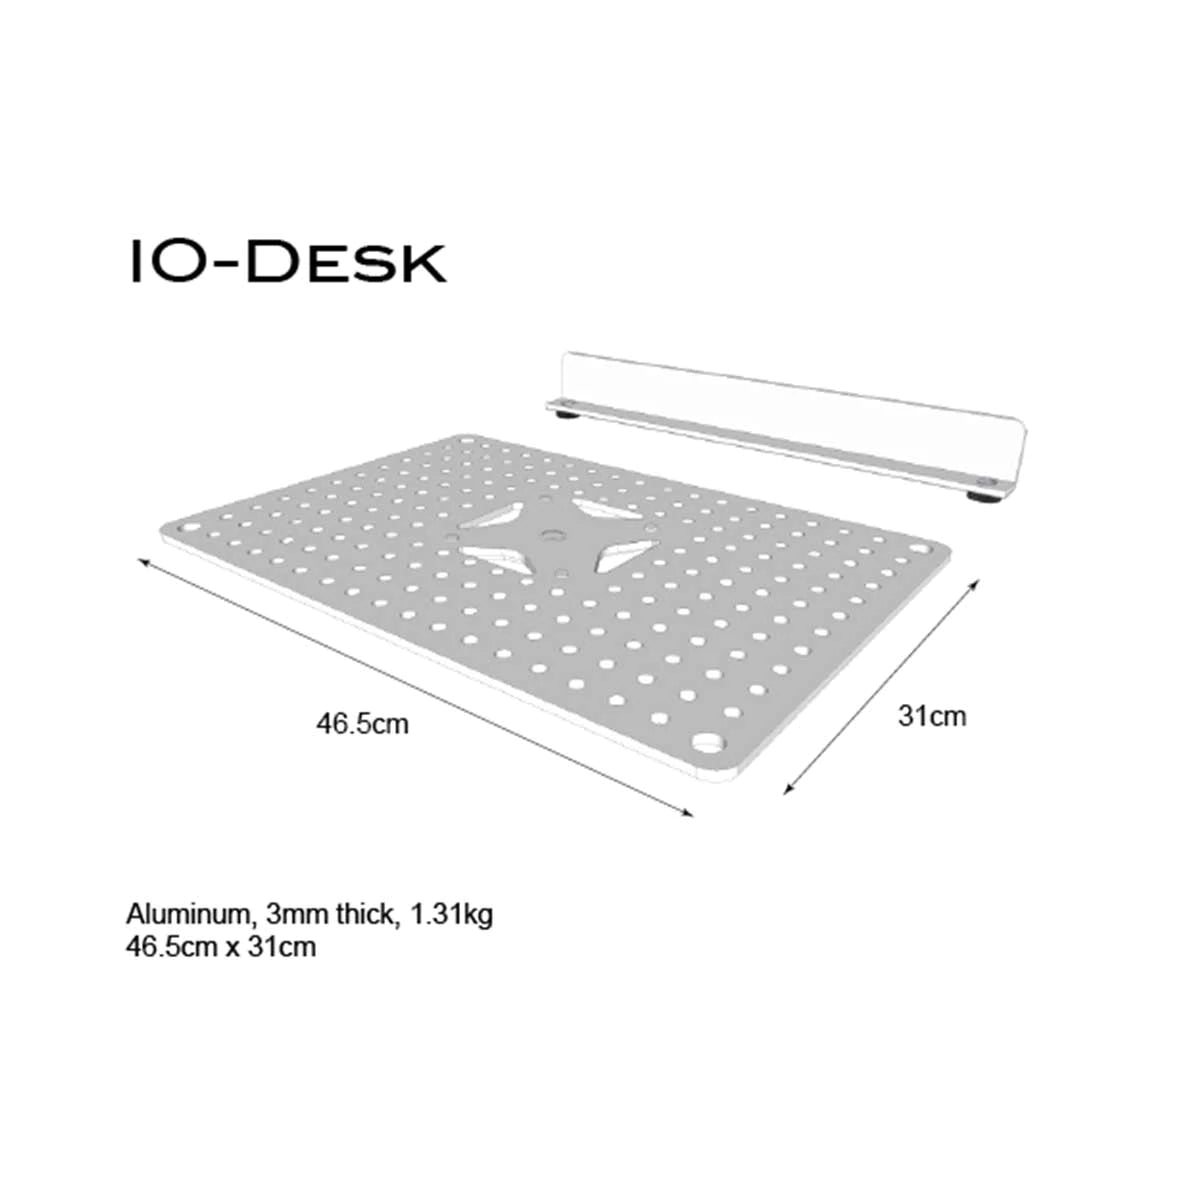 Triad-Orbit IO-DESK IO-Equipped Laptop and Utility Desk